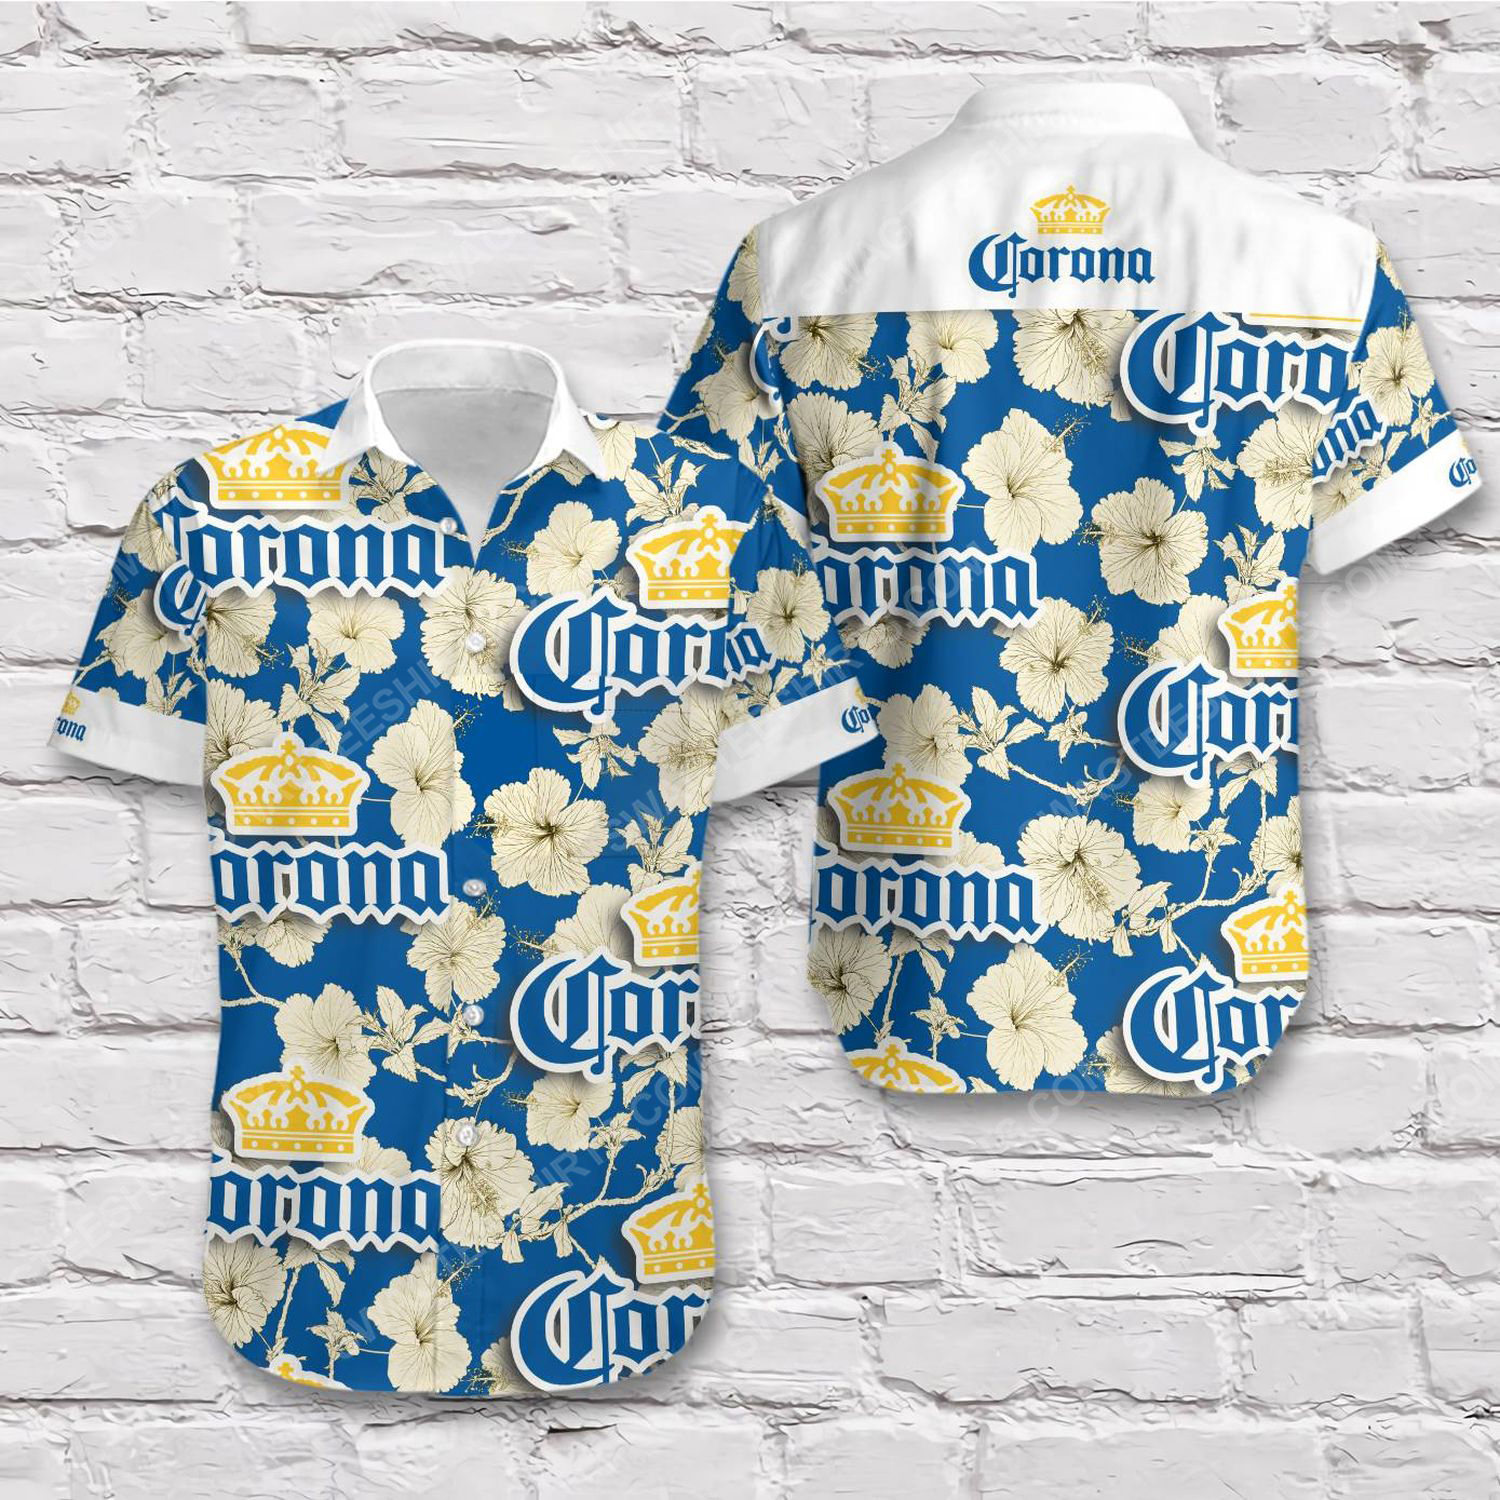 [special edition] Corona beer blue gold tropical summer short sleeve hawaiian shirt – maria